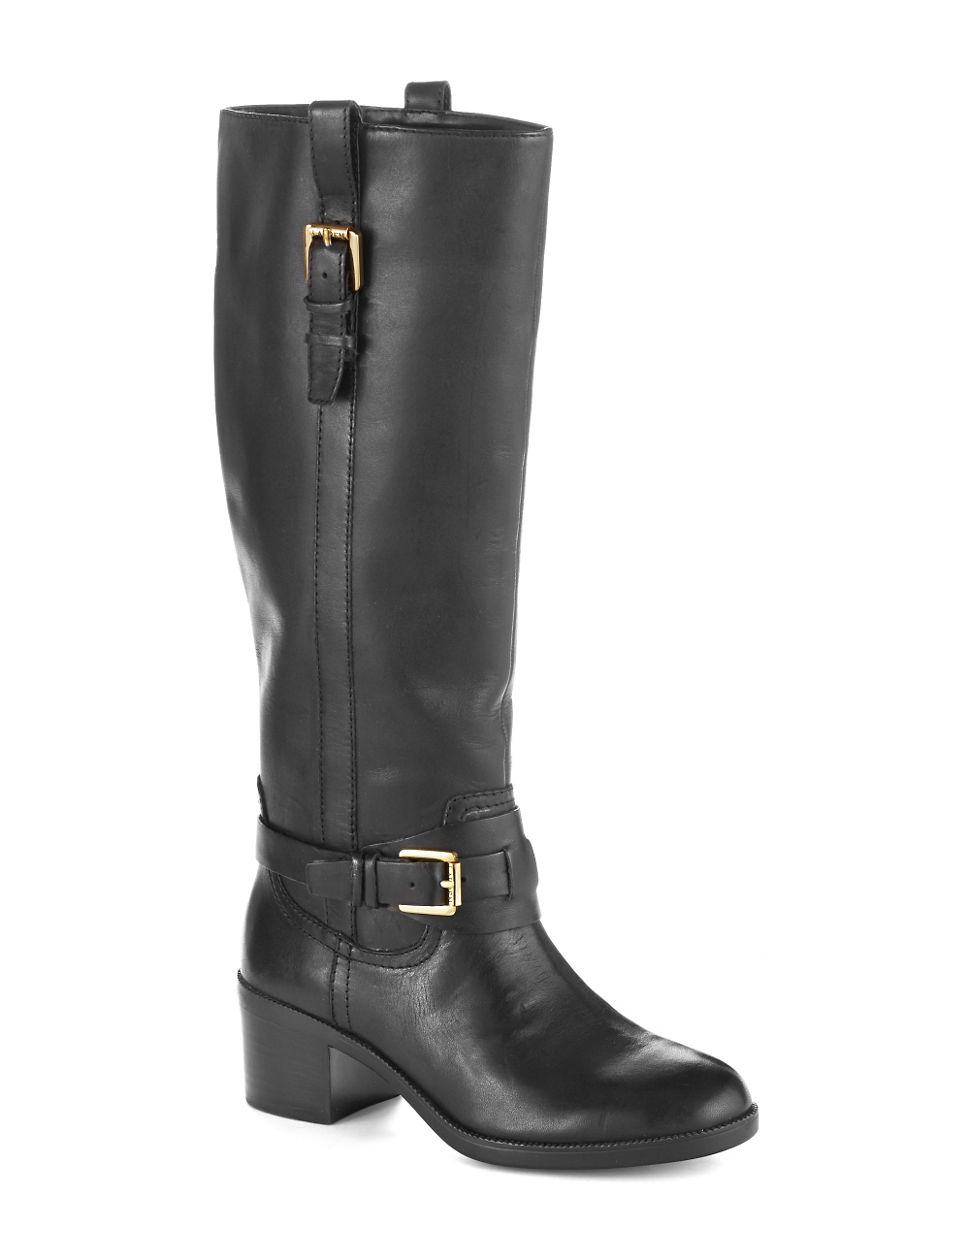 Lauren By Ralph Lauren Charleen Riding Boots in Black | Lyst